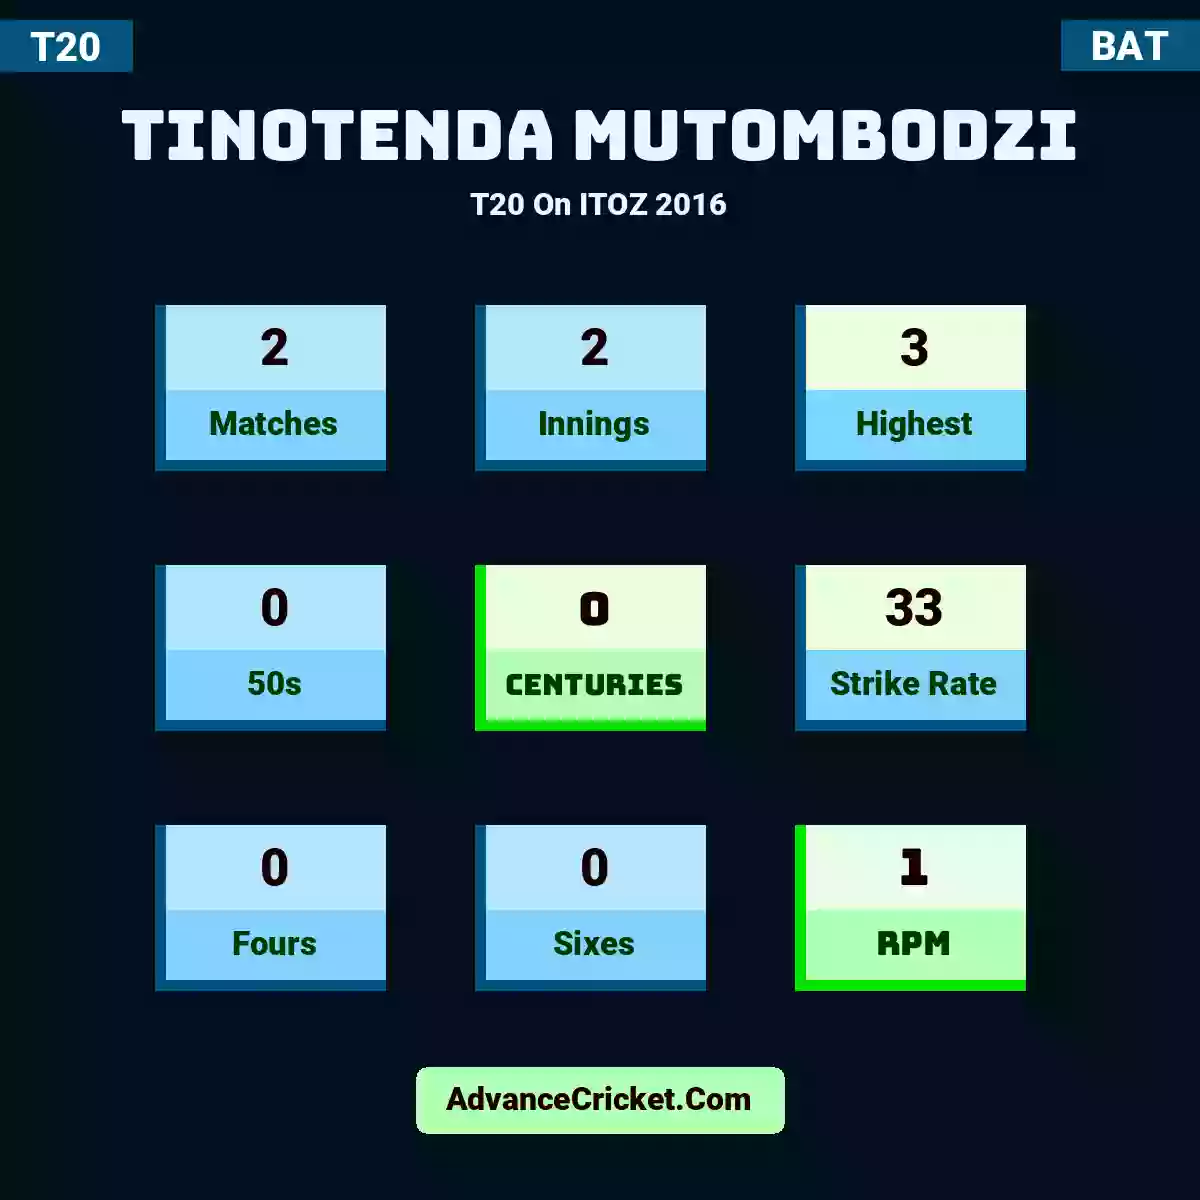 Tinotenda Mutombodzi T20  On ITOZ 2016, Tinotenda Mutombodzi played 2 matches, scored 3 runs as highest, 0 half-centuries, and 0 centuries, with a strike rate of 33. T.Mutombodzi hit 0 fours and 0 sixes, with an RPM of 1.